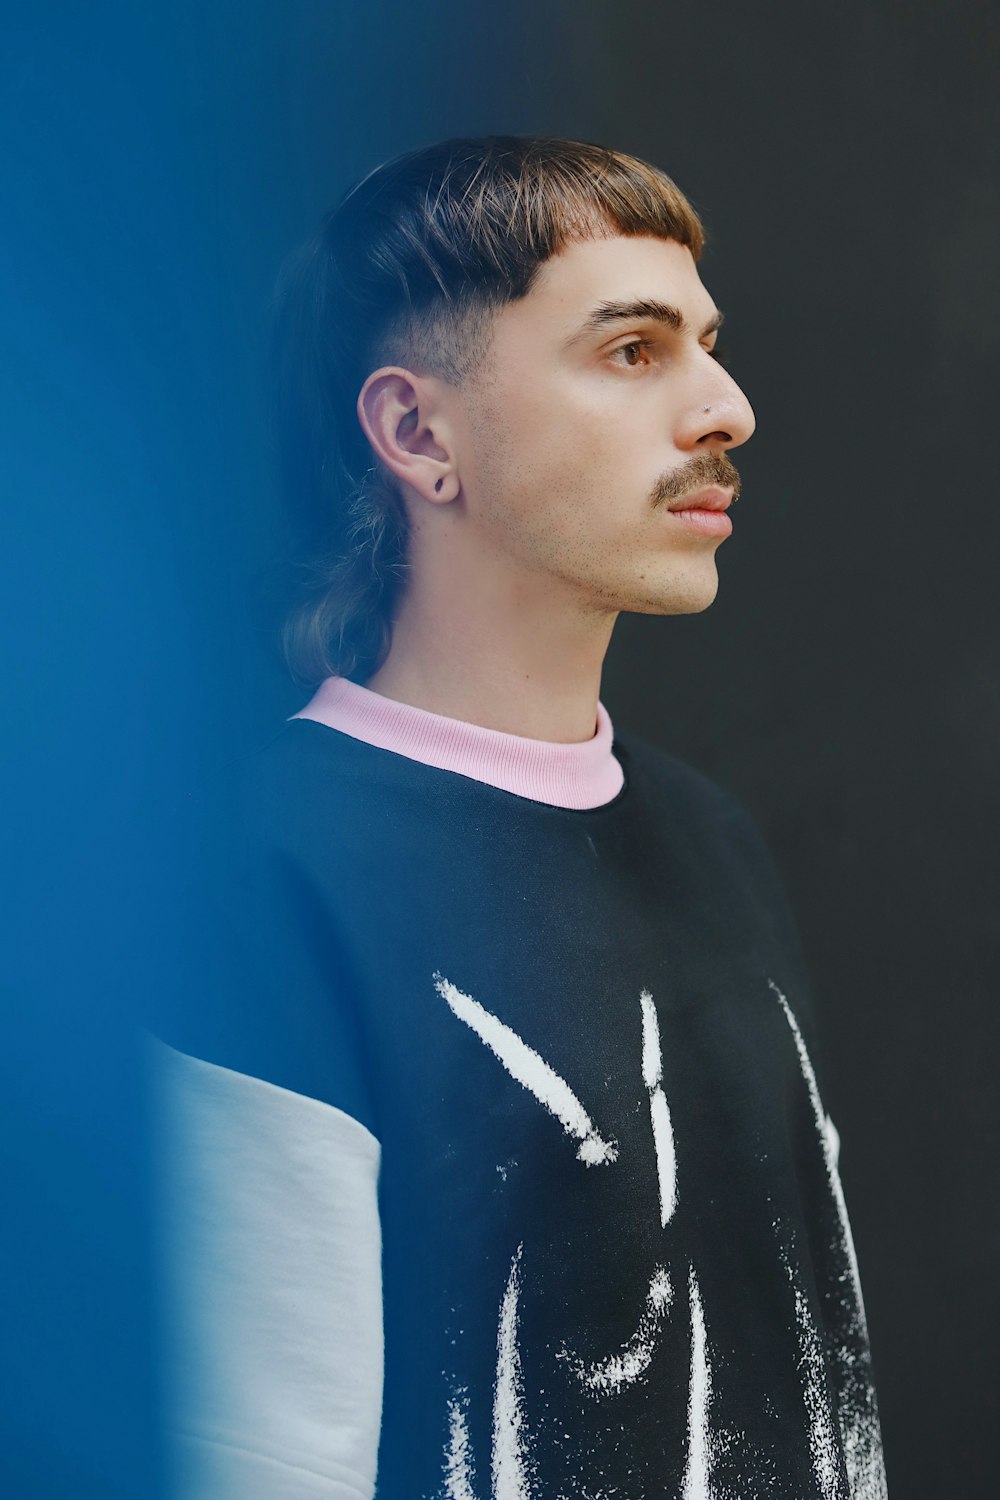 Ein Mann mit Schnurrbart steht vor einer blauen Wand